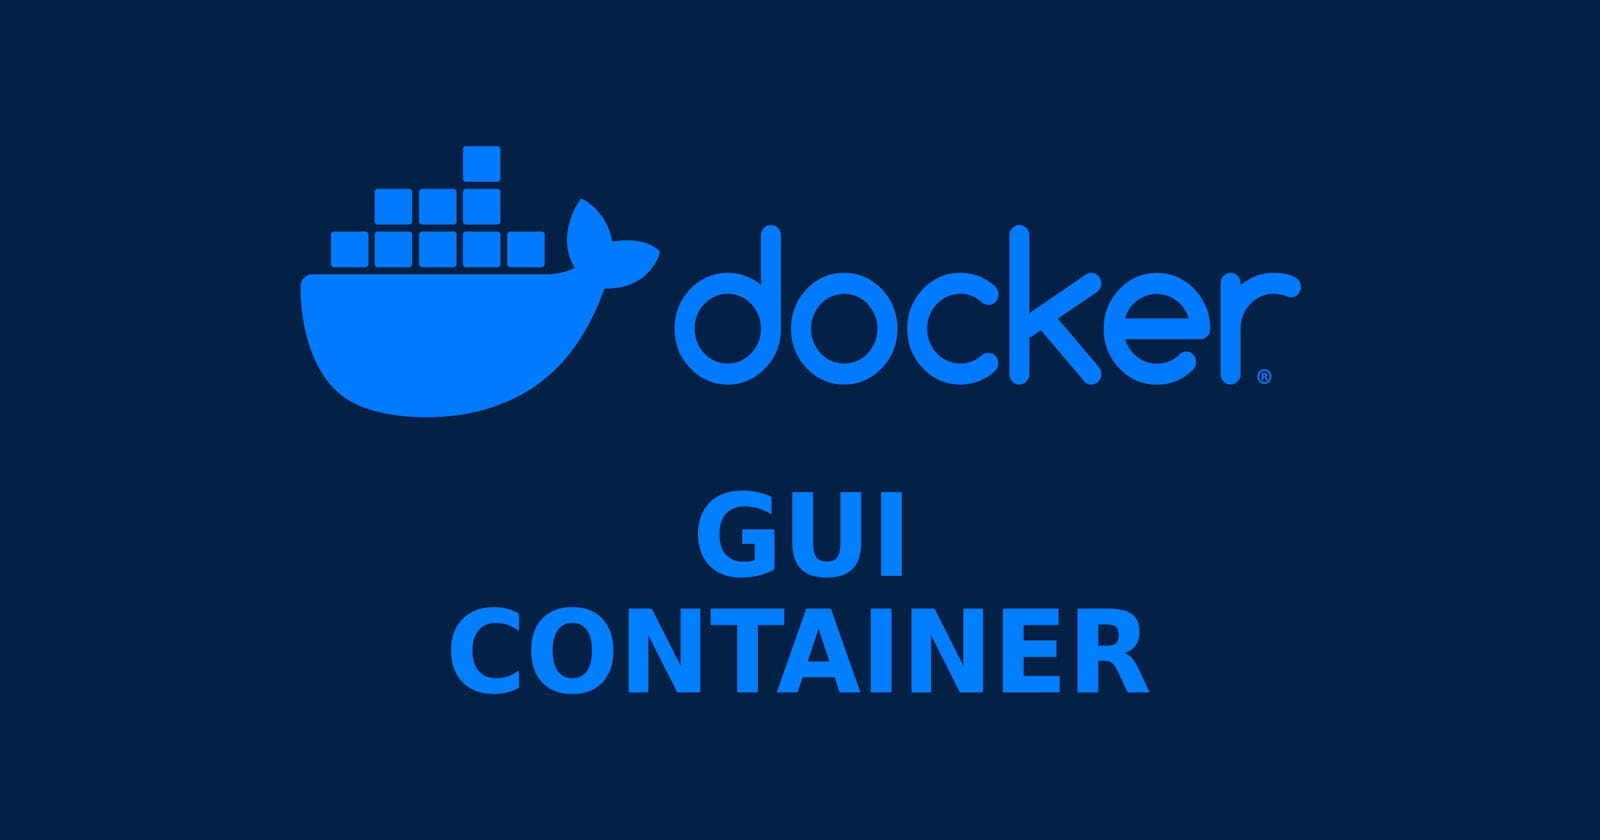 Running GUI applications on docker: